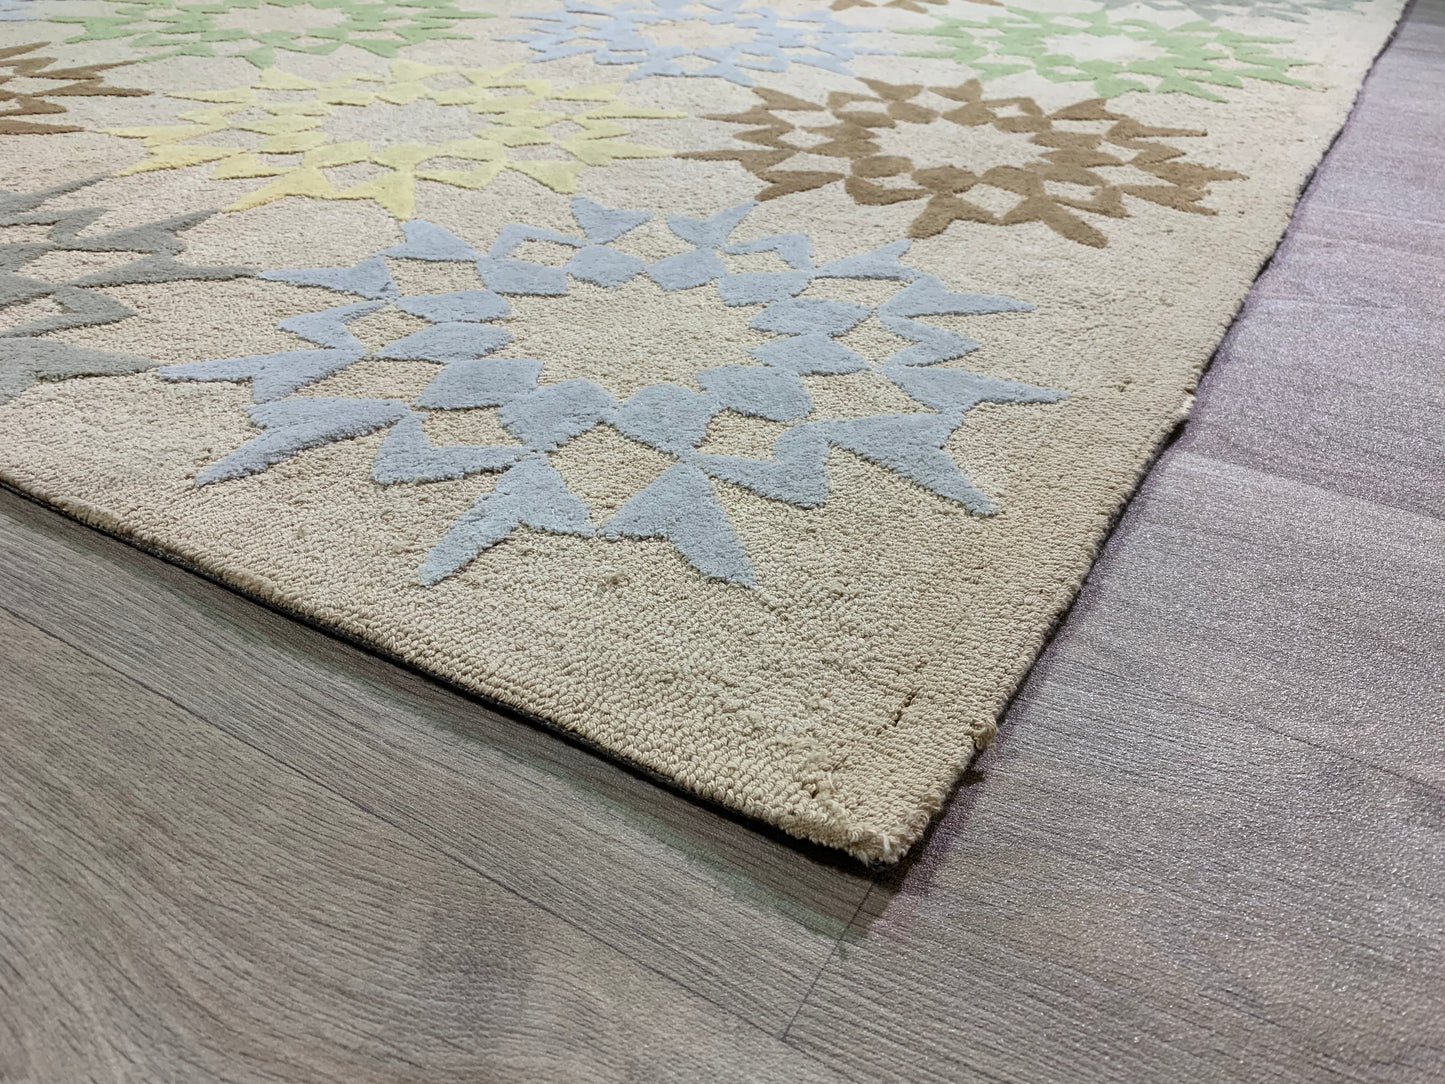 MARTHA STEWART patterned cotton rug